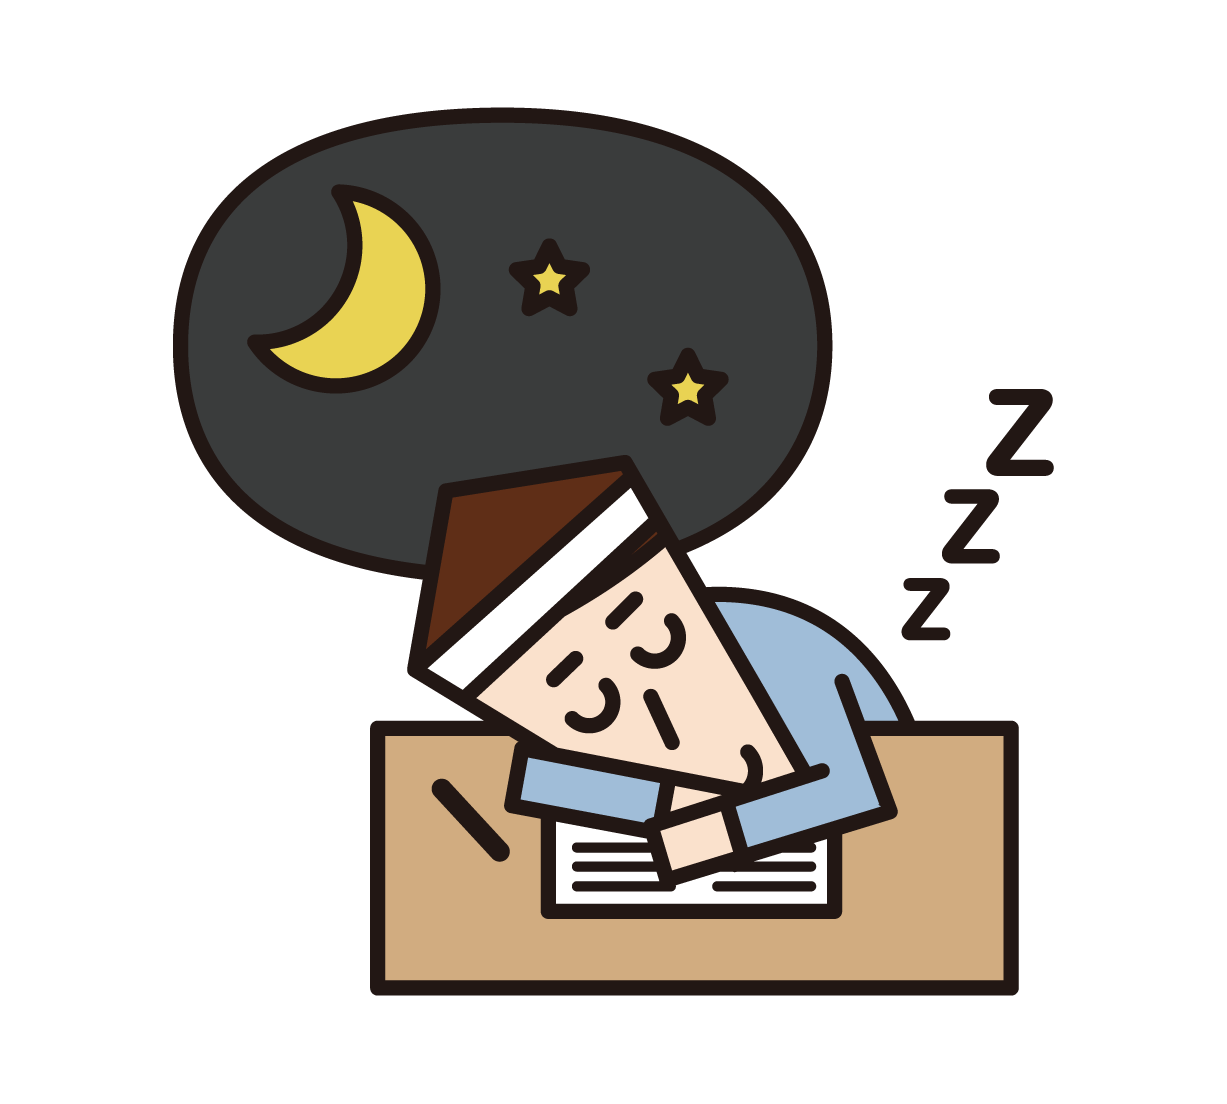 입시를 위해 공부하는 동안 피곤하고 자고있는 사람 (여성)의 삽화